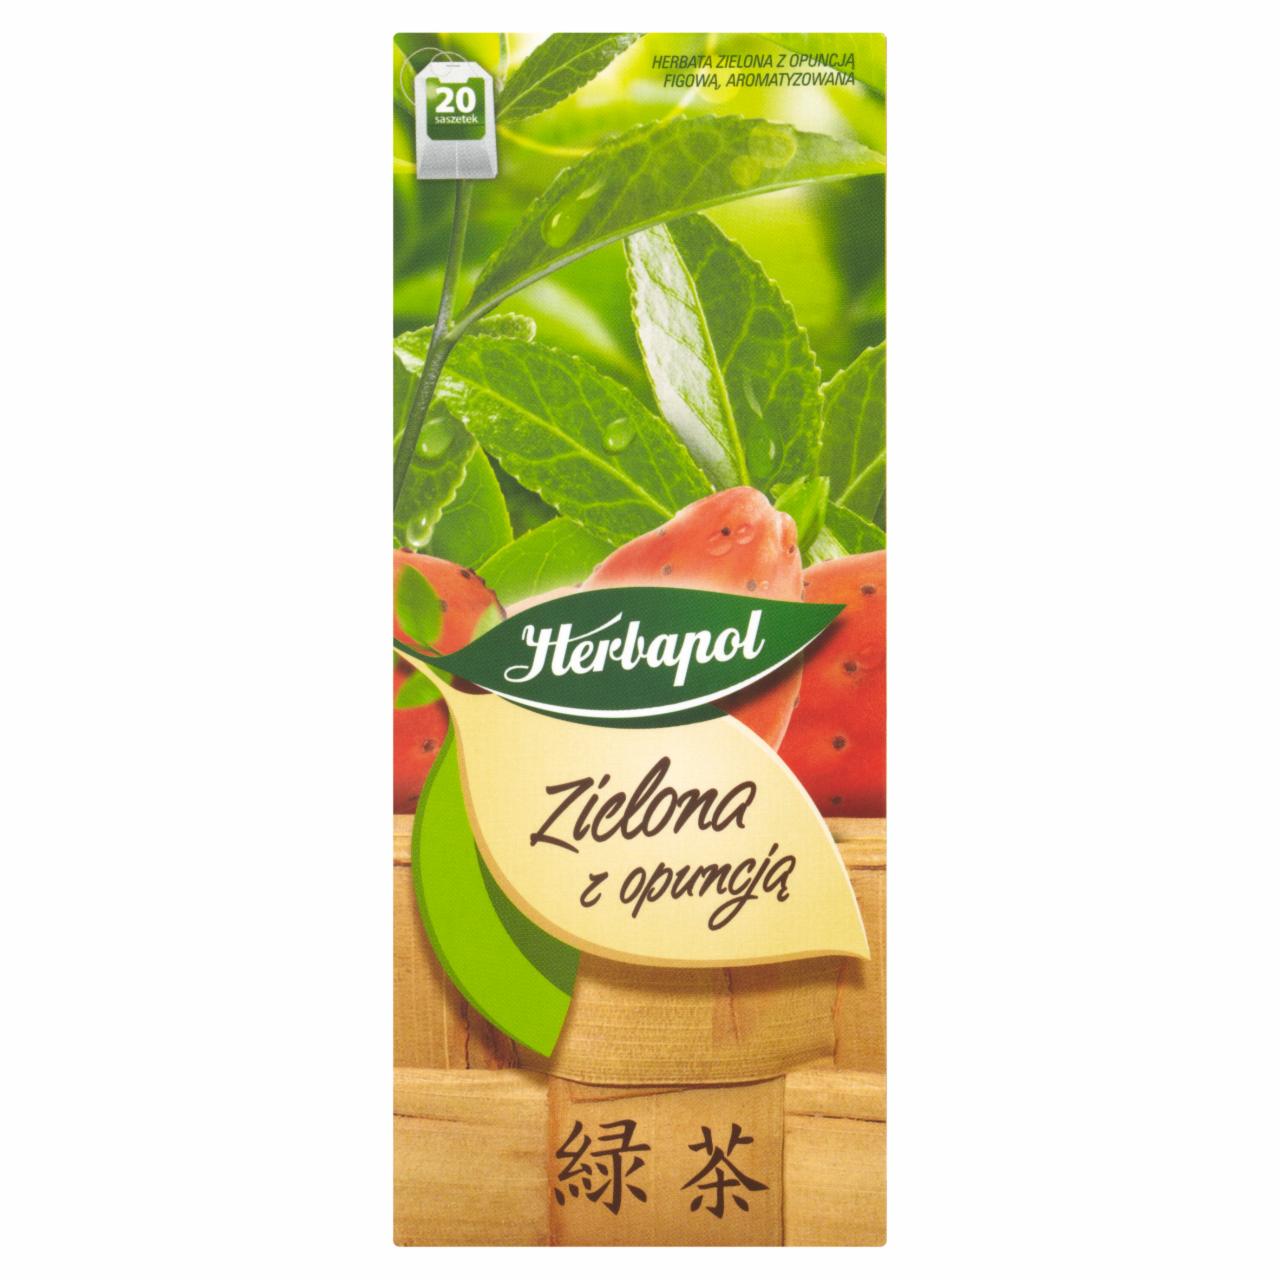 Zdjęcia - Herbapol Herbata zielona z opuncją 30 g (20 saszetek)